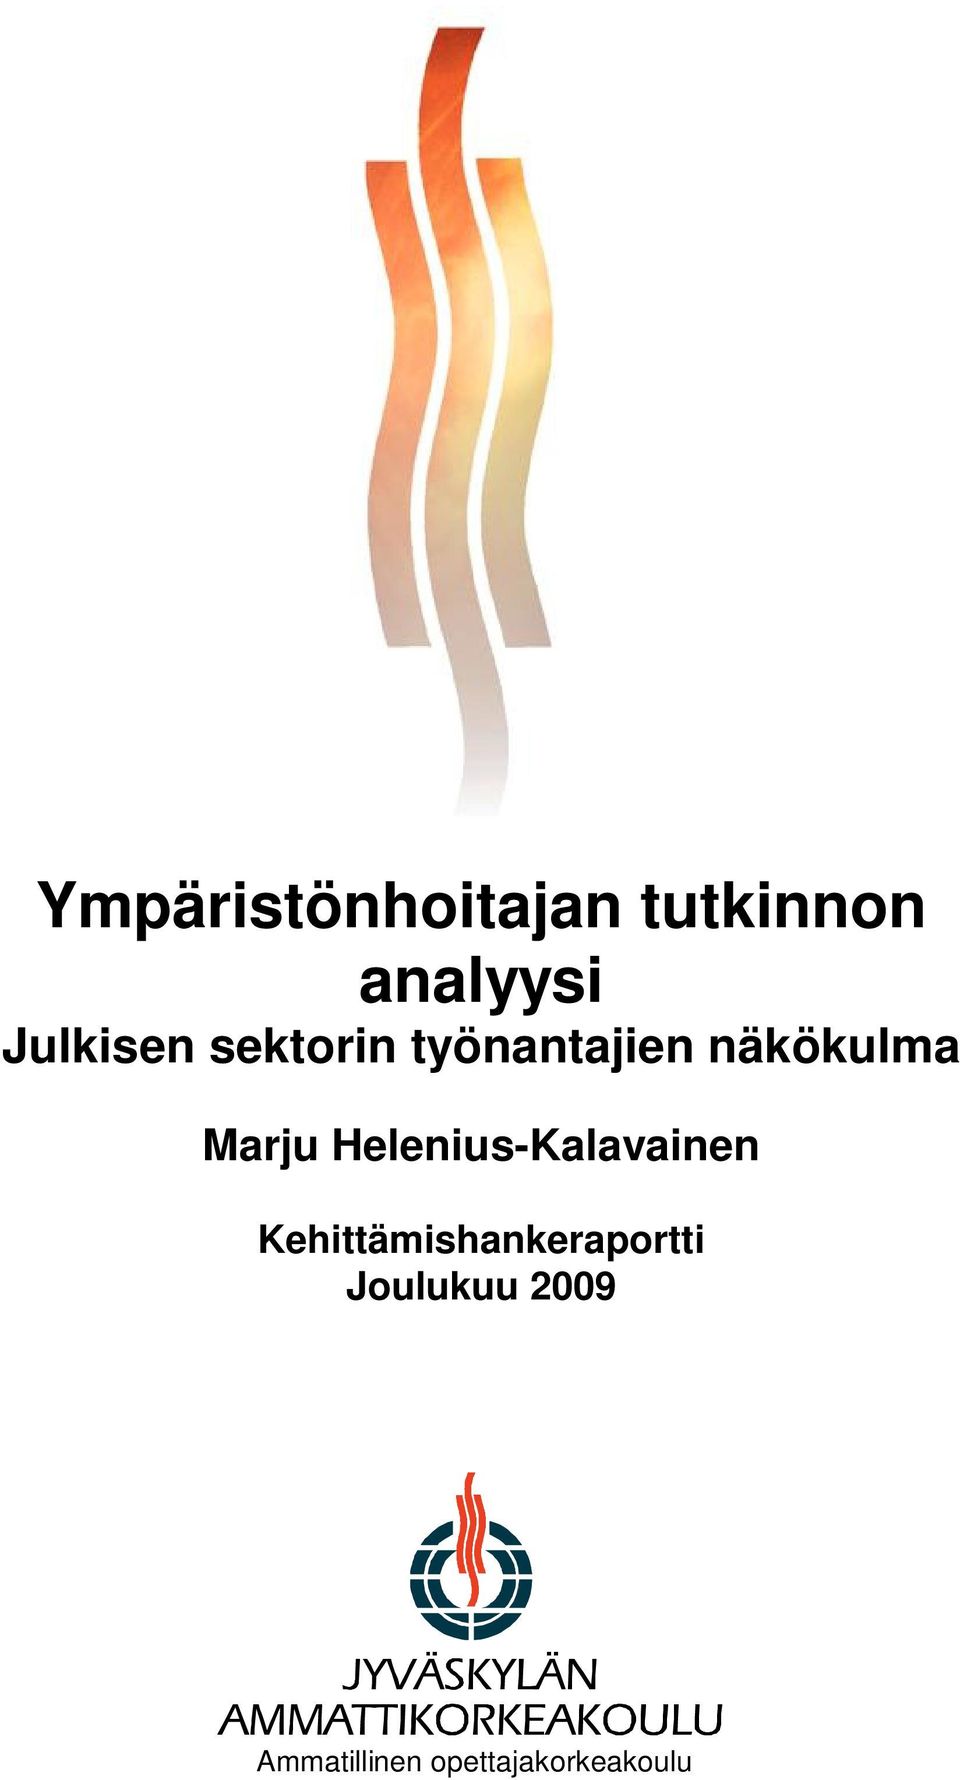 Marju Helenius-Kalavainen